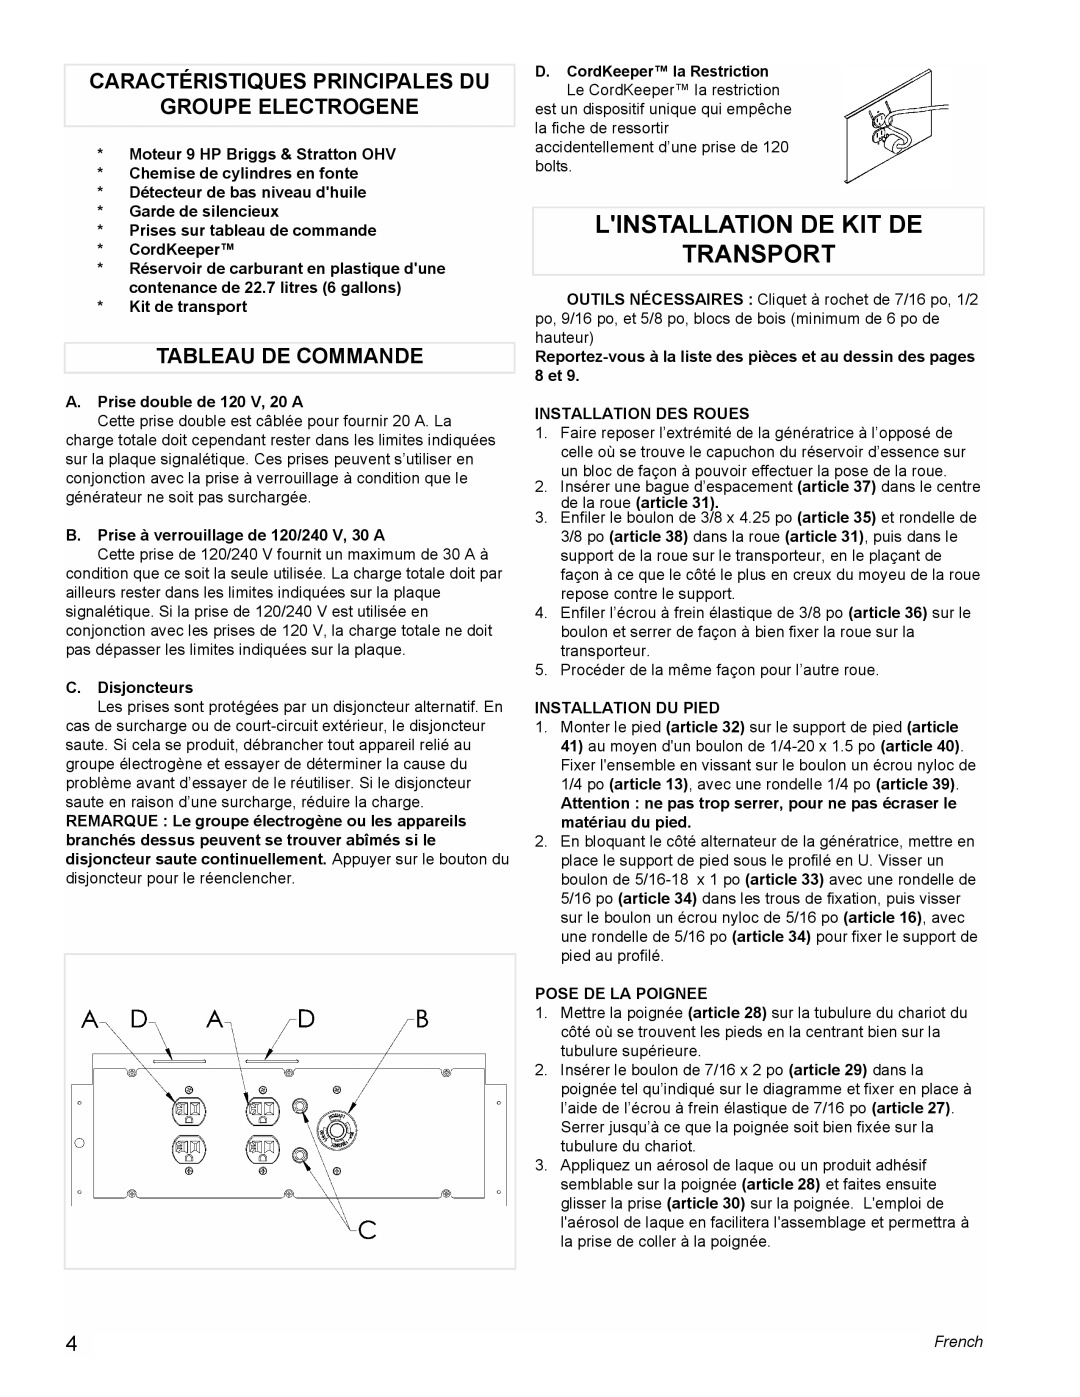 Powermate PM0535000 manual Linstallation De Kit De Transport, Caractéristiques Principales Du, Groupe Electrogene, French 